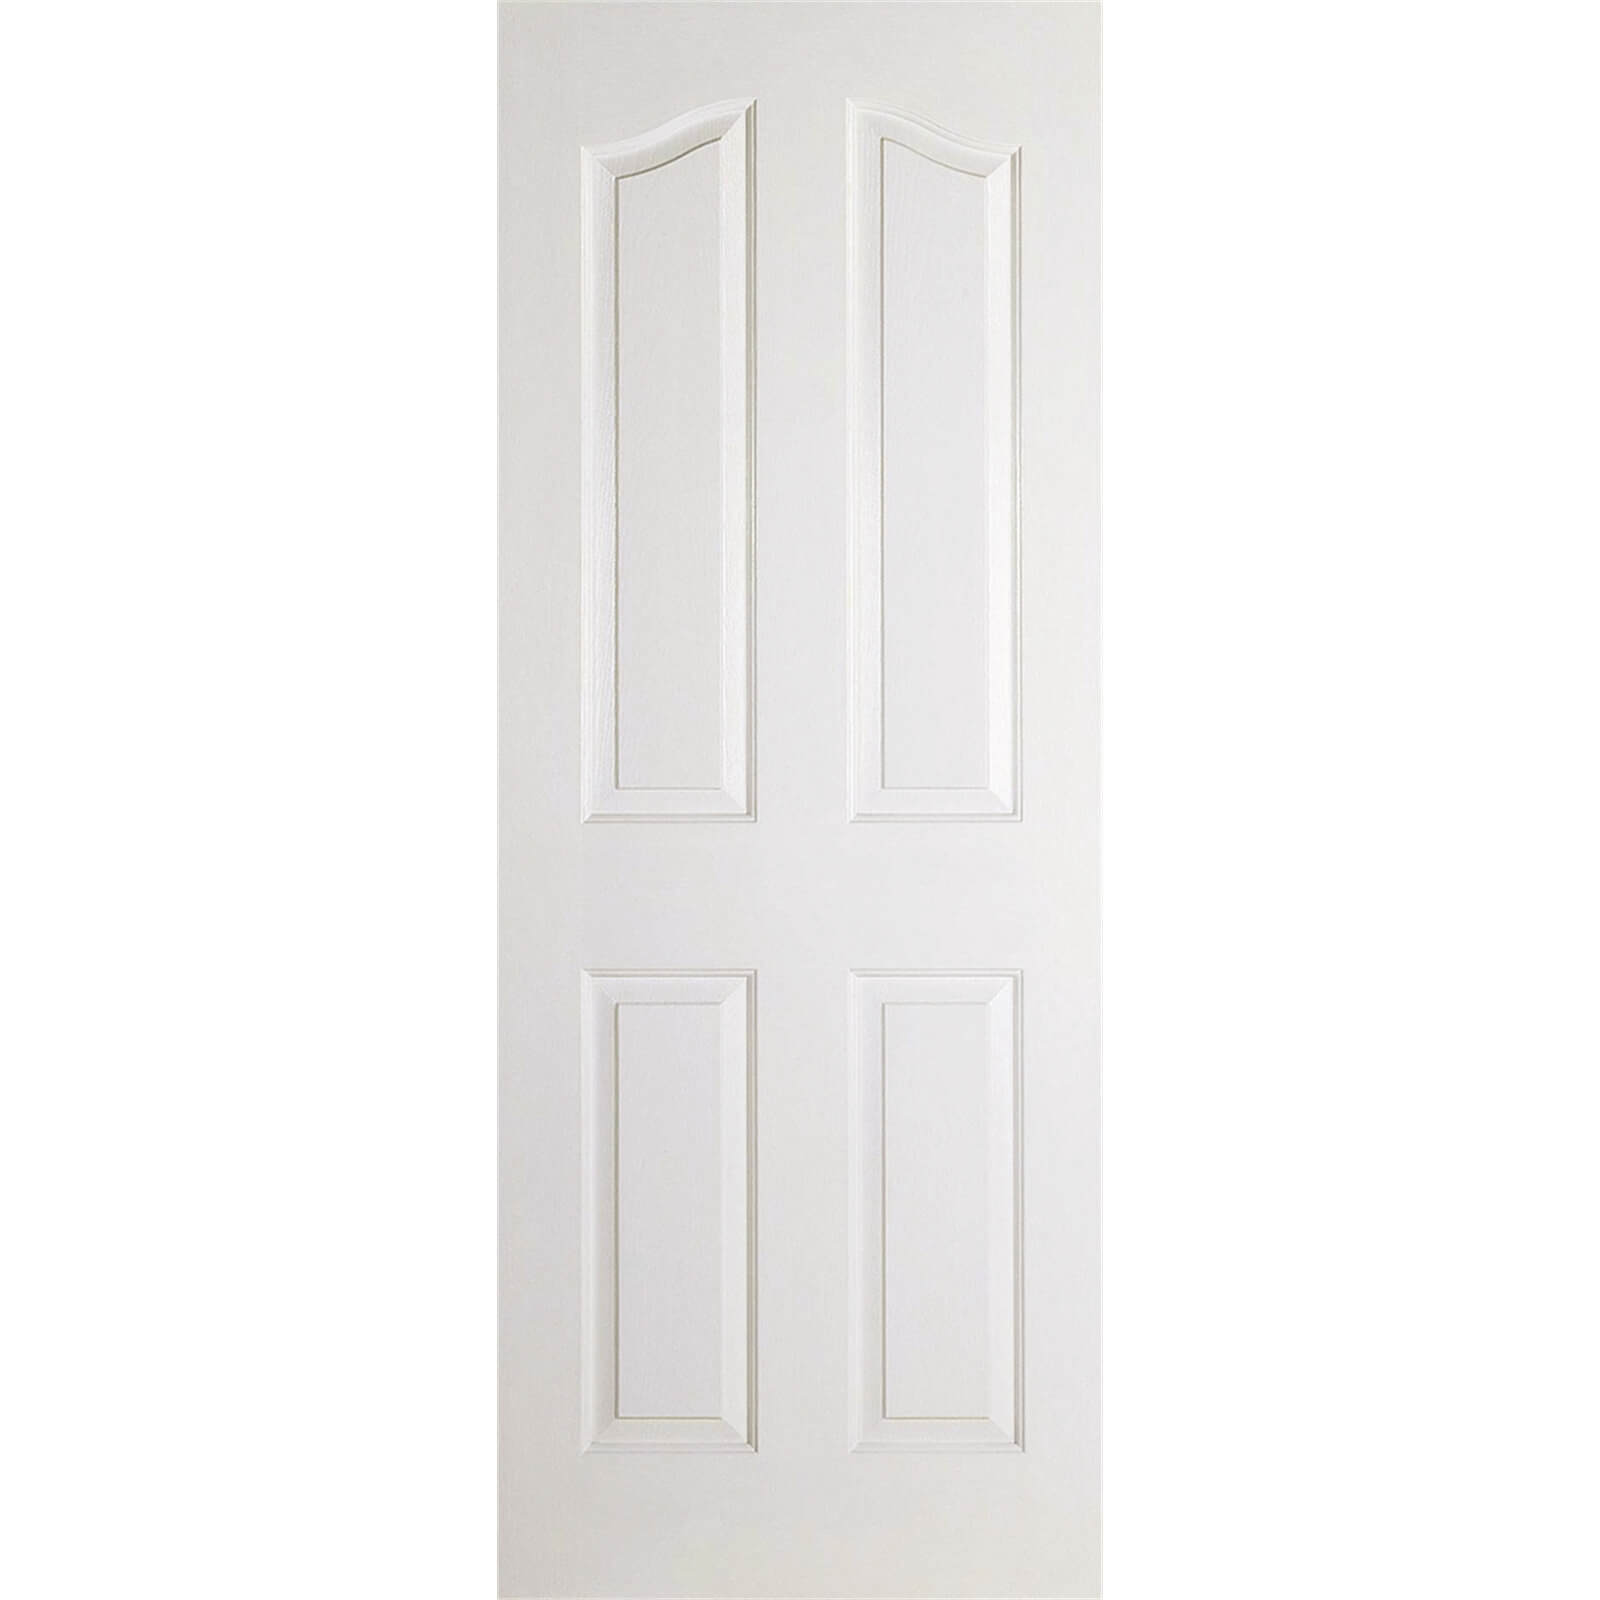 Mayfair Internal Primed White 4 Panel Door - 686 x 1981mm